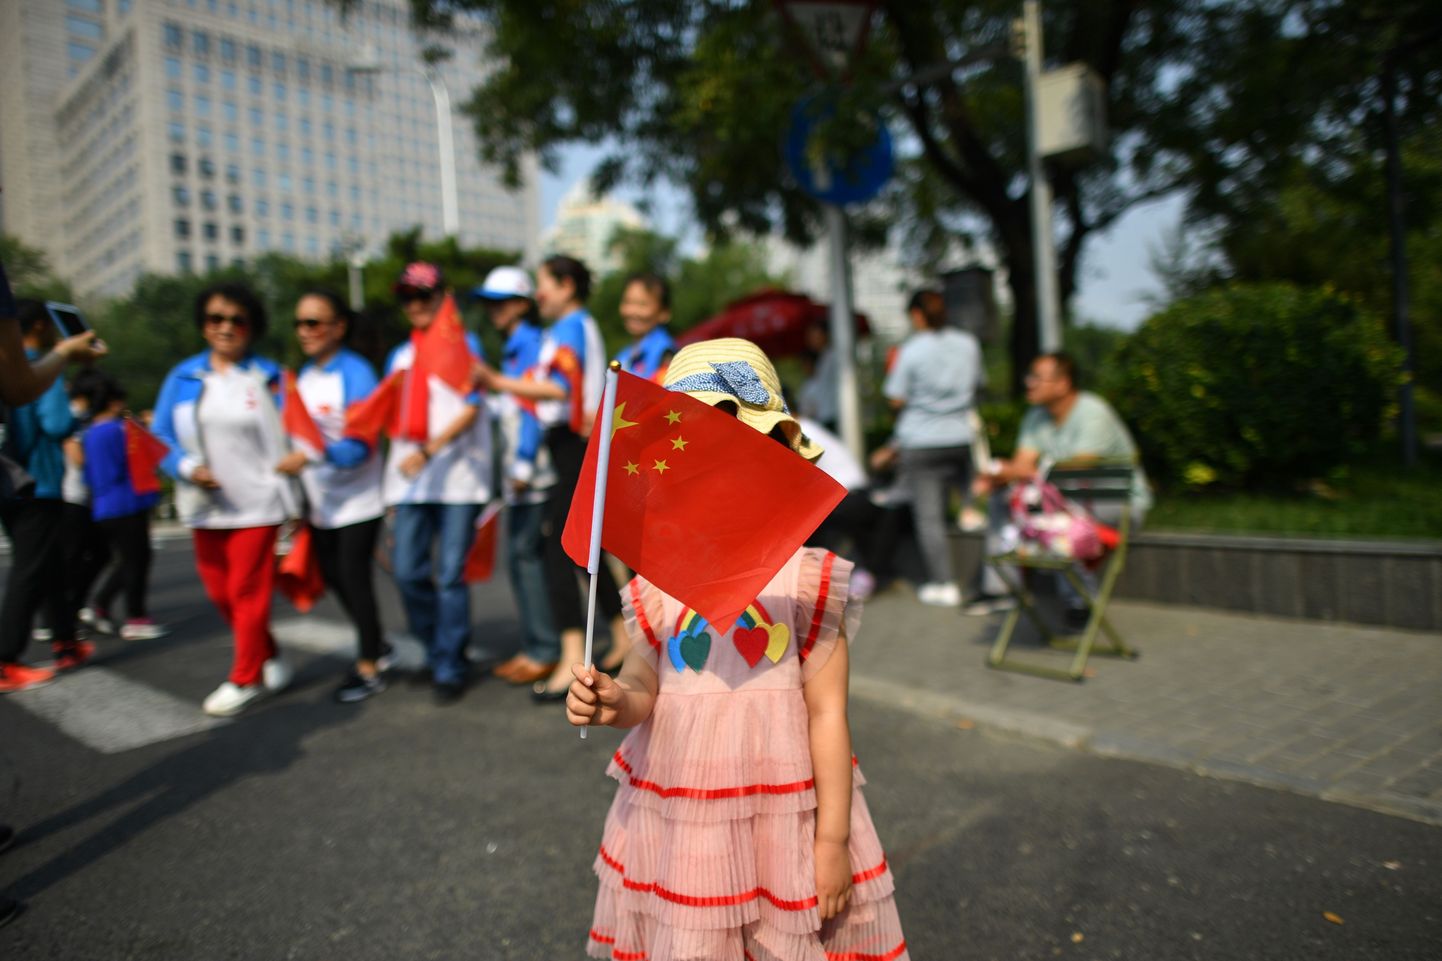 Ķīna ceturto gadu pēc kārtas "Freedom House" ziņojumā atzīta par lielāko interneta brīvības ierobežotāju.